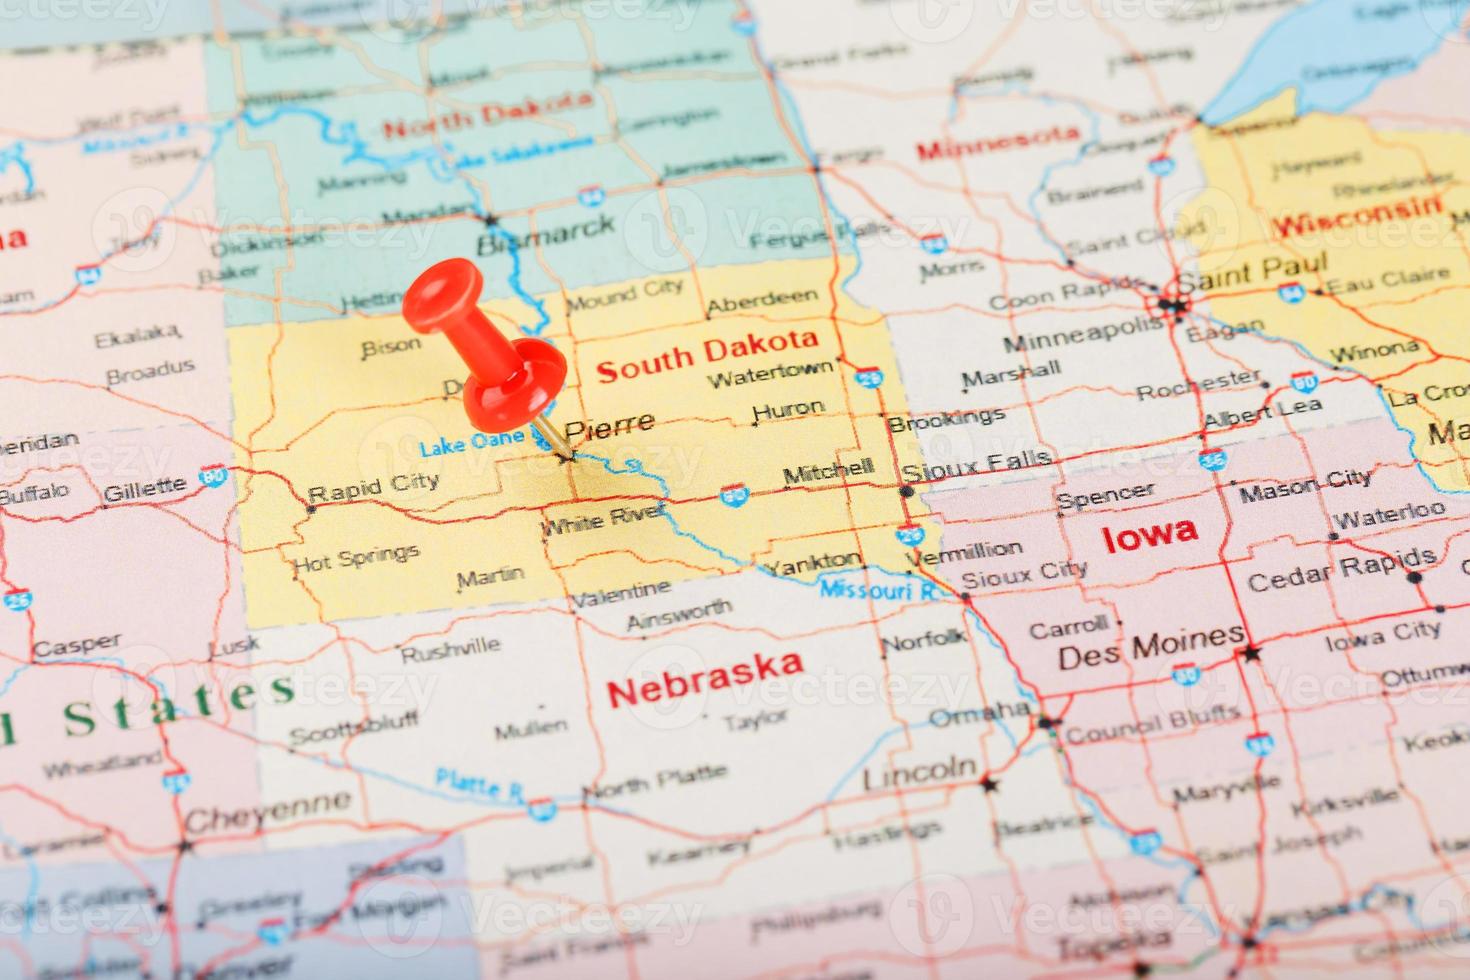 agulha clerical vermelha em um mapa dos eua, dakota do sul e da capital pierre. feche o mapa da dakota do sul com red tack foto